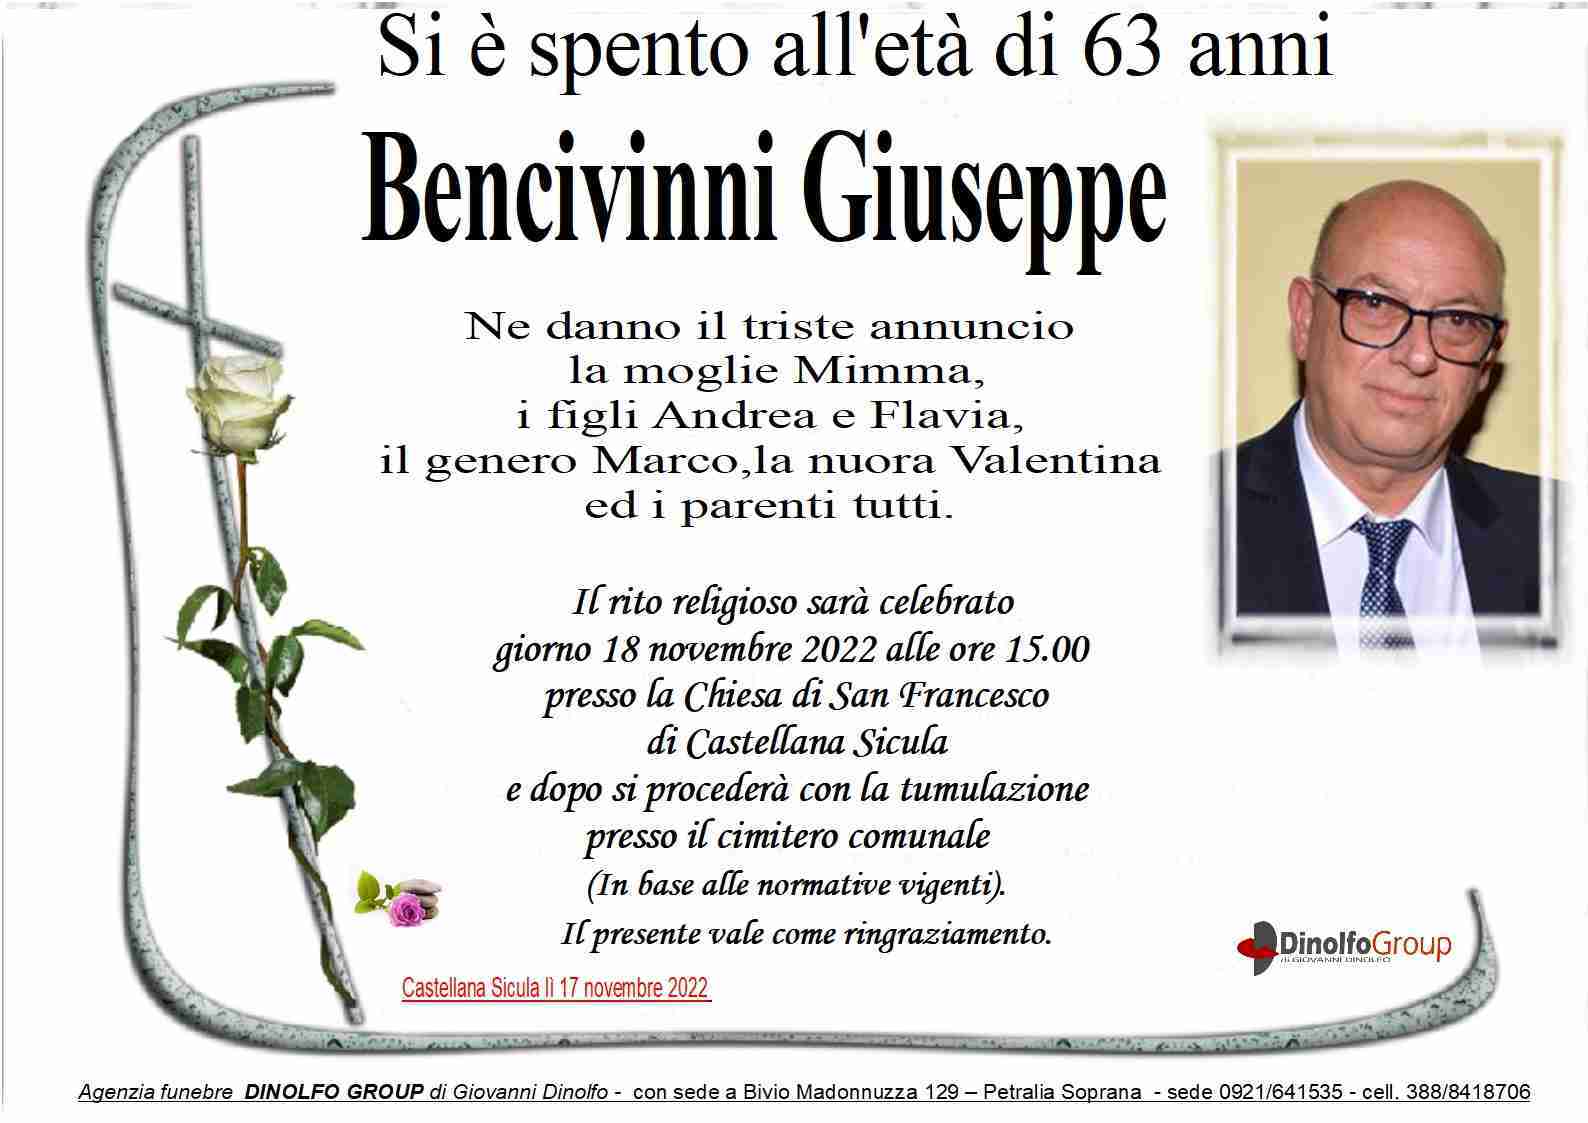 Giuseppe Bencivinni